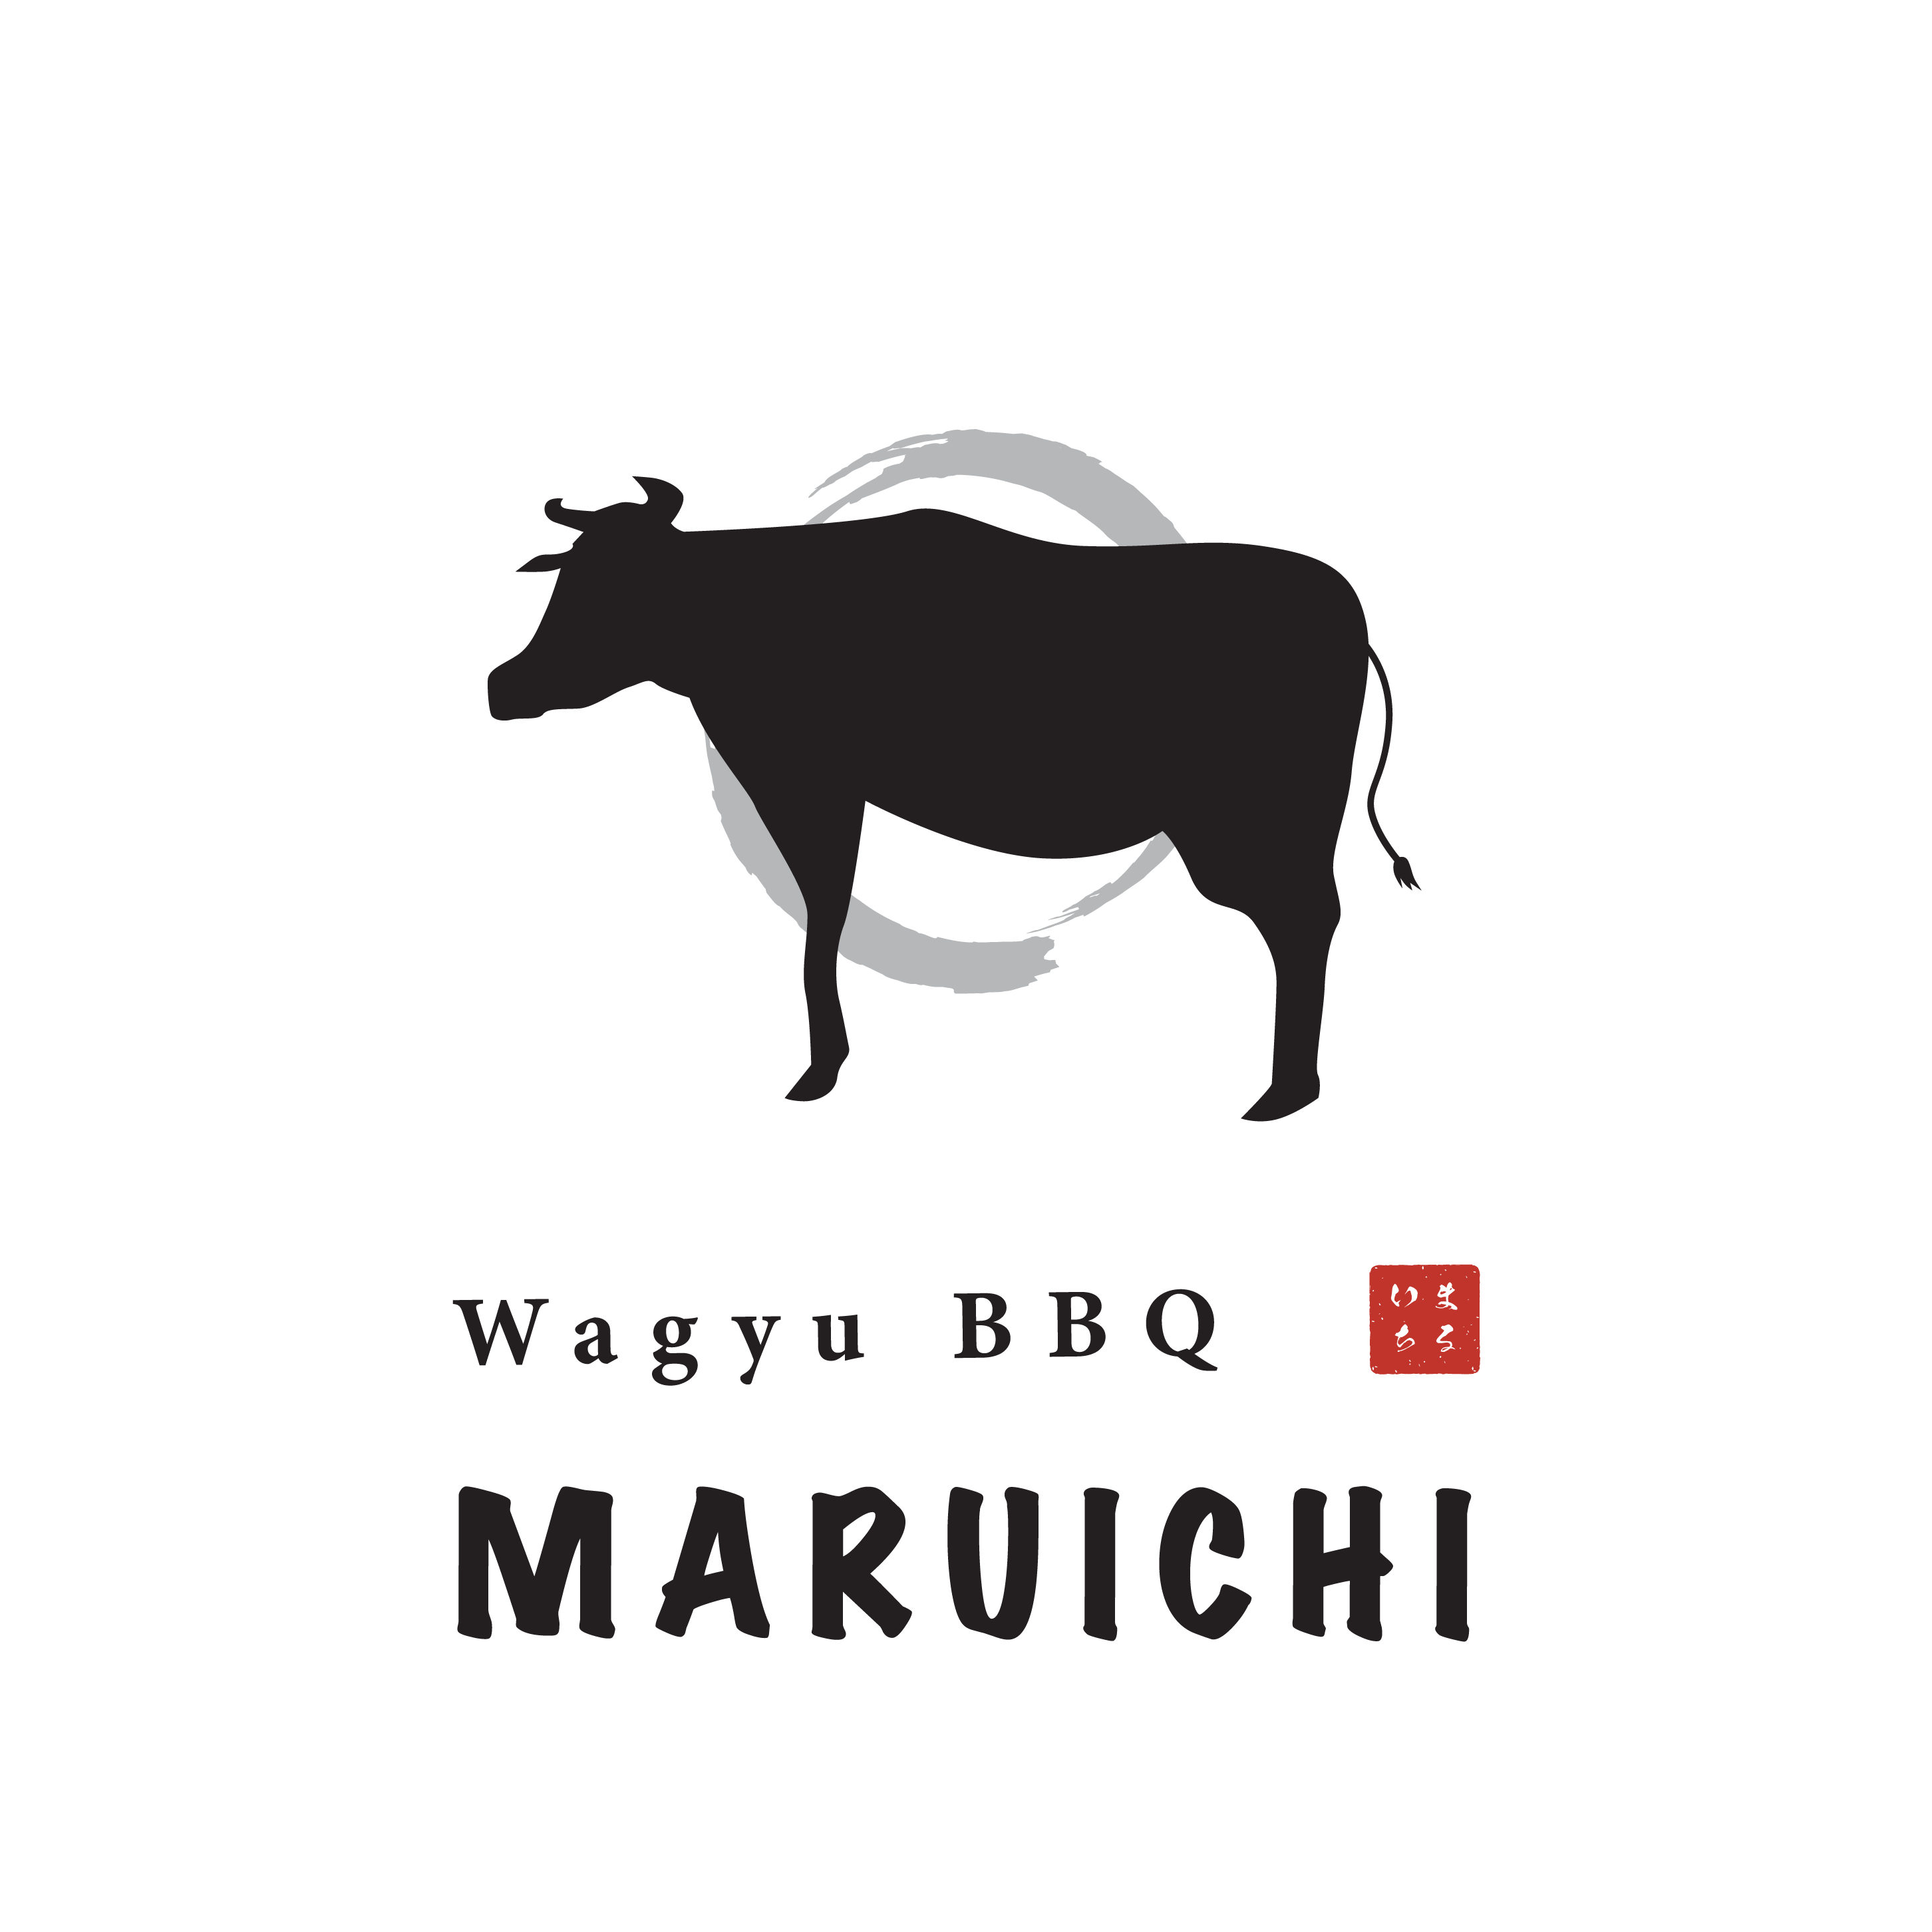 Wagyu BBQ MARUICHI